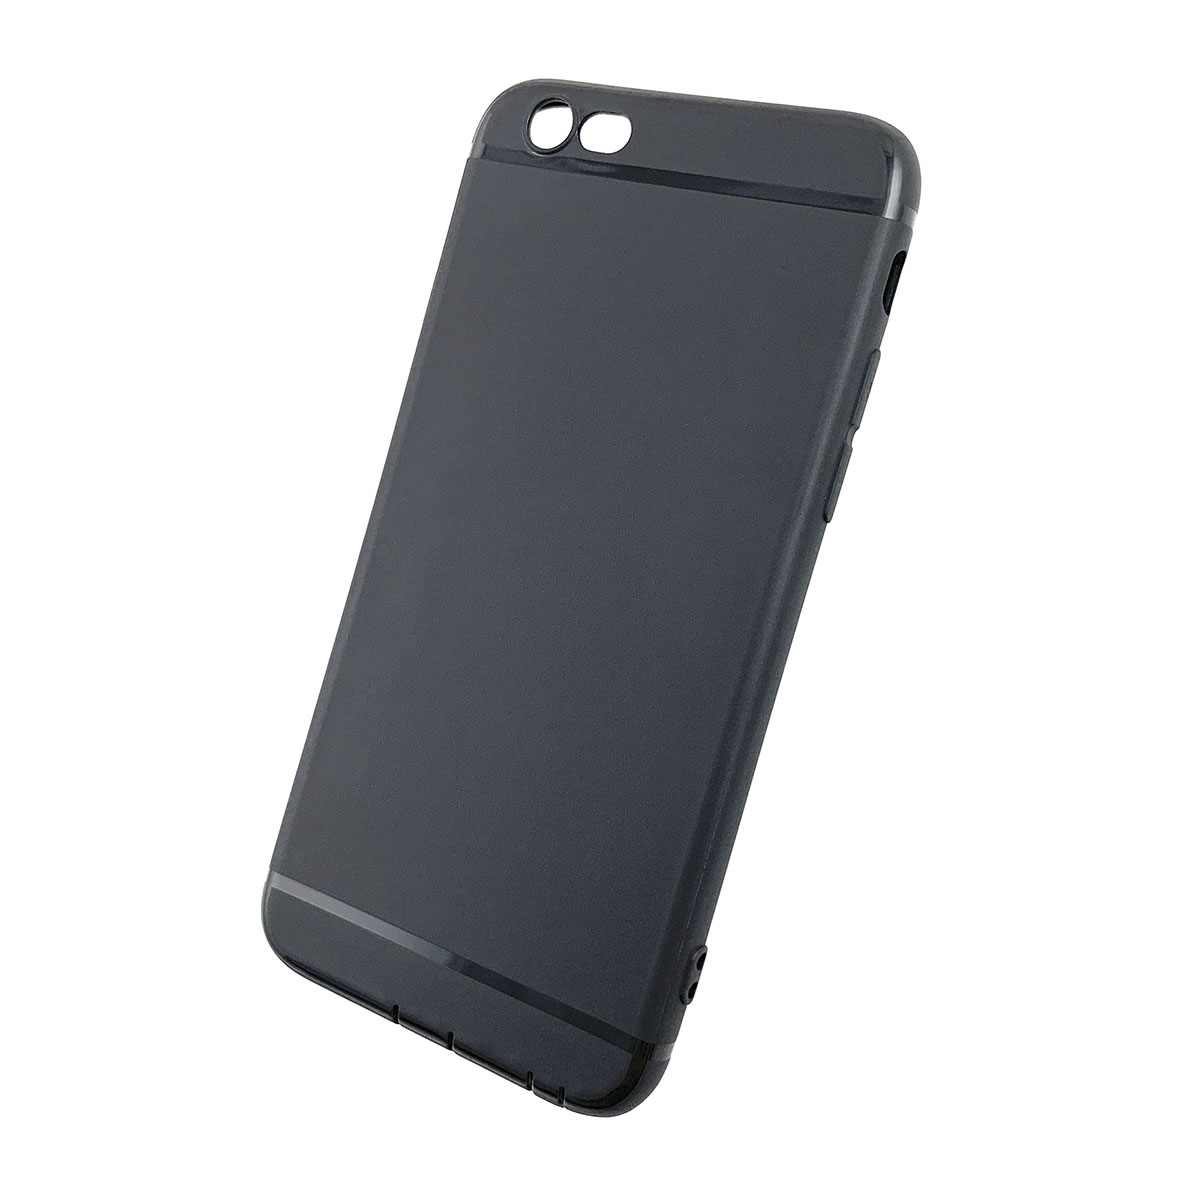 Чехол накладка GPS для APPLE iPhone 6, 6G, 6S, силикон, матовый, цвет черный.